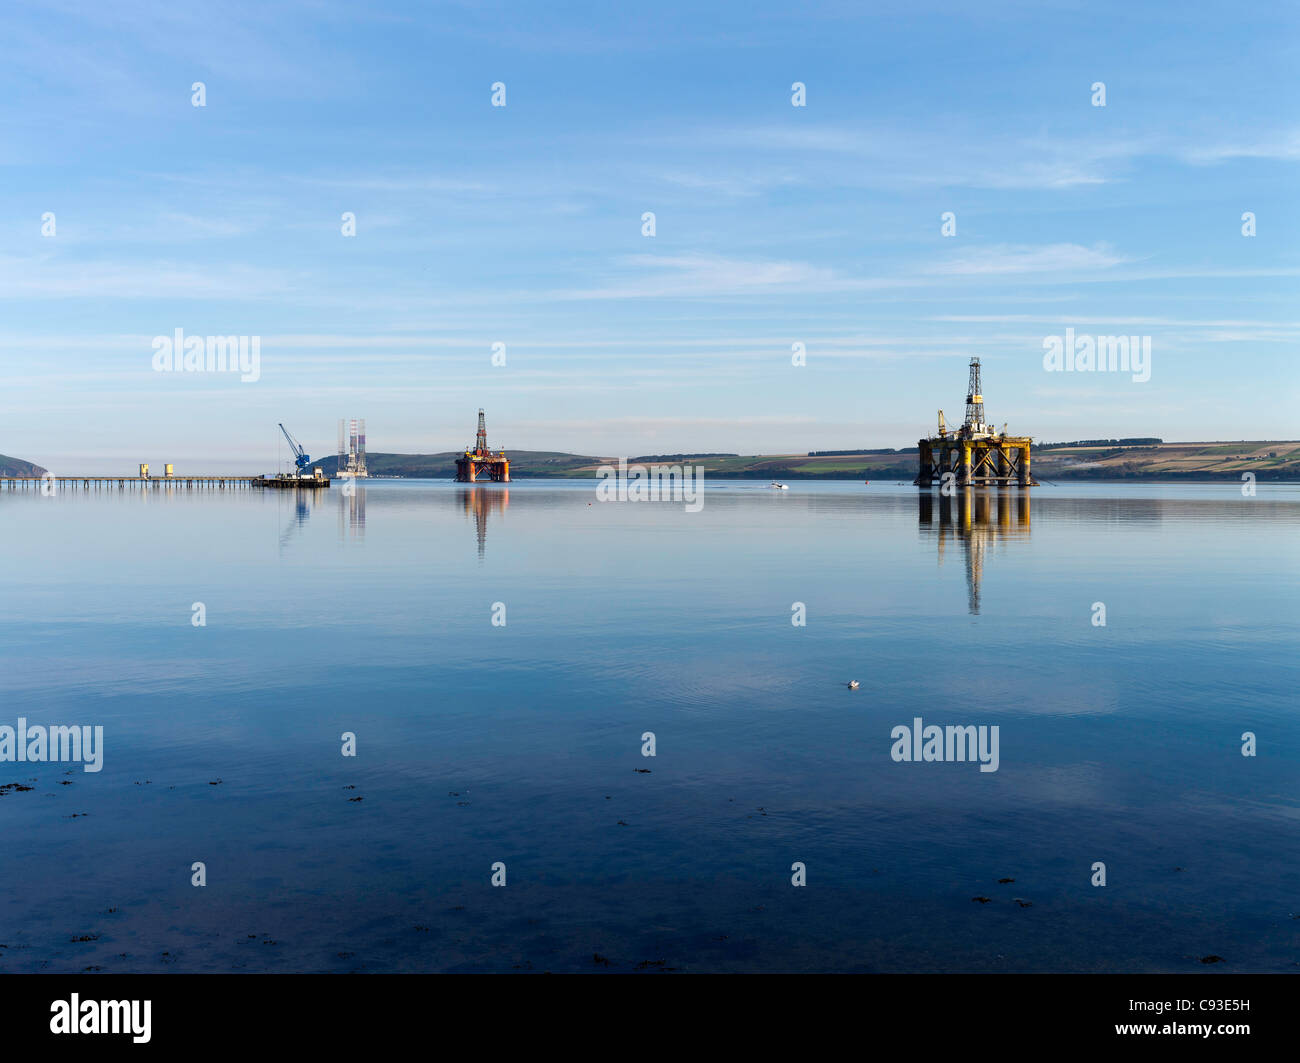 Dh INVERGORDON ROSS CROMARTY desguace Reparación de plataformas petrolíferas Nigg Bay Cromarty Firth rig Escocia mar del norte Foto de stock